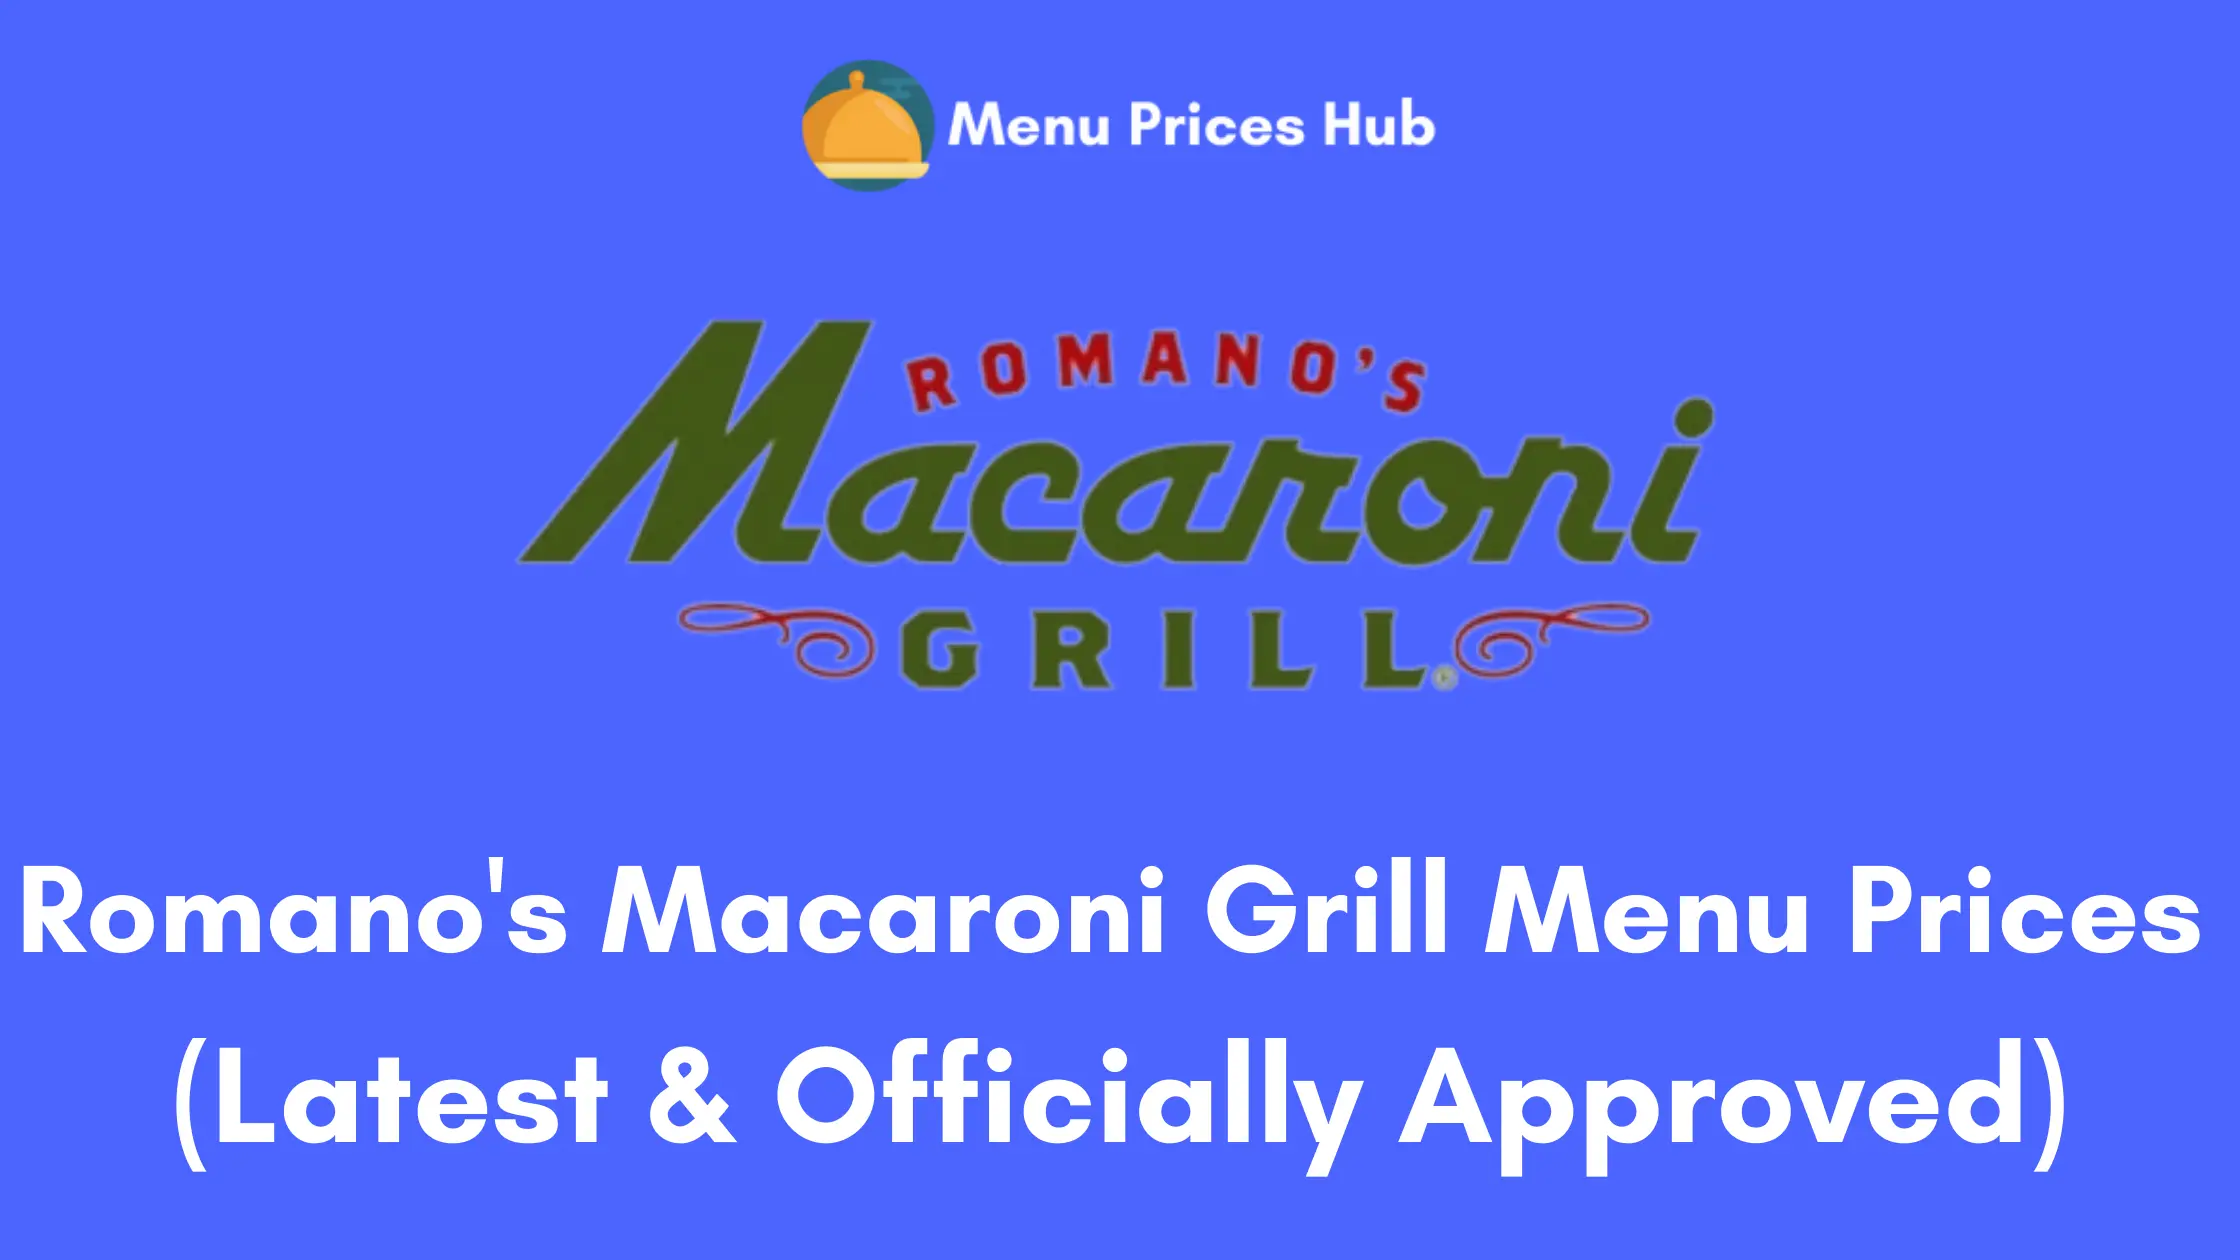 Romano’s Macaroni Grill Menu Prices